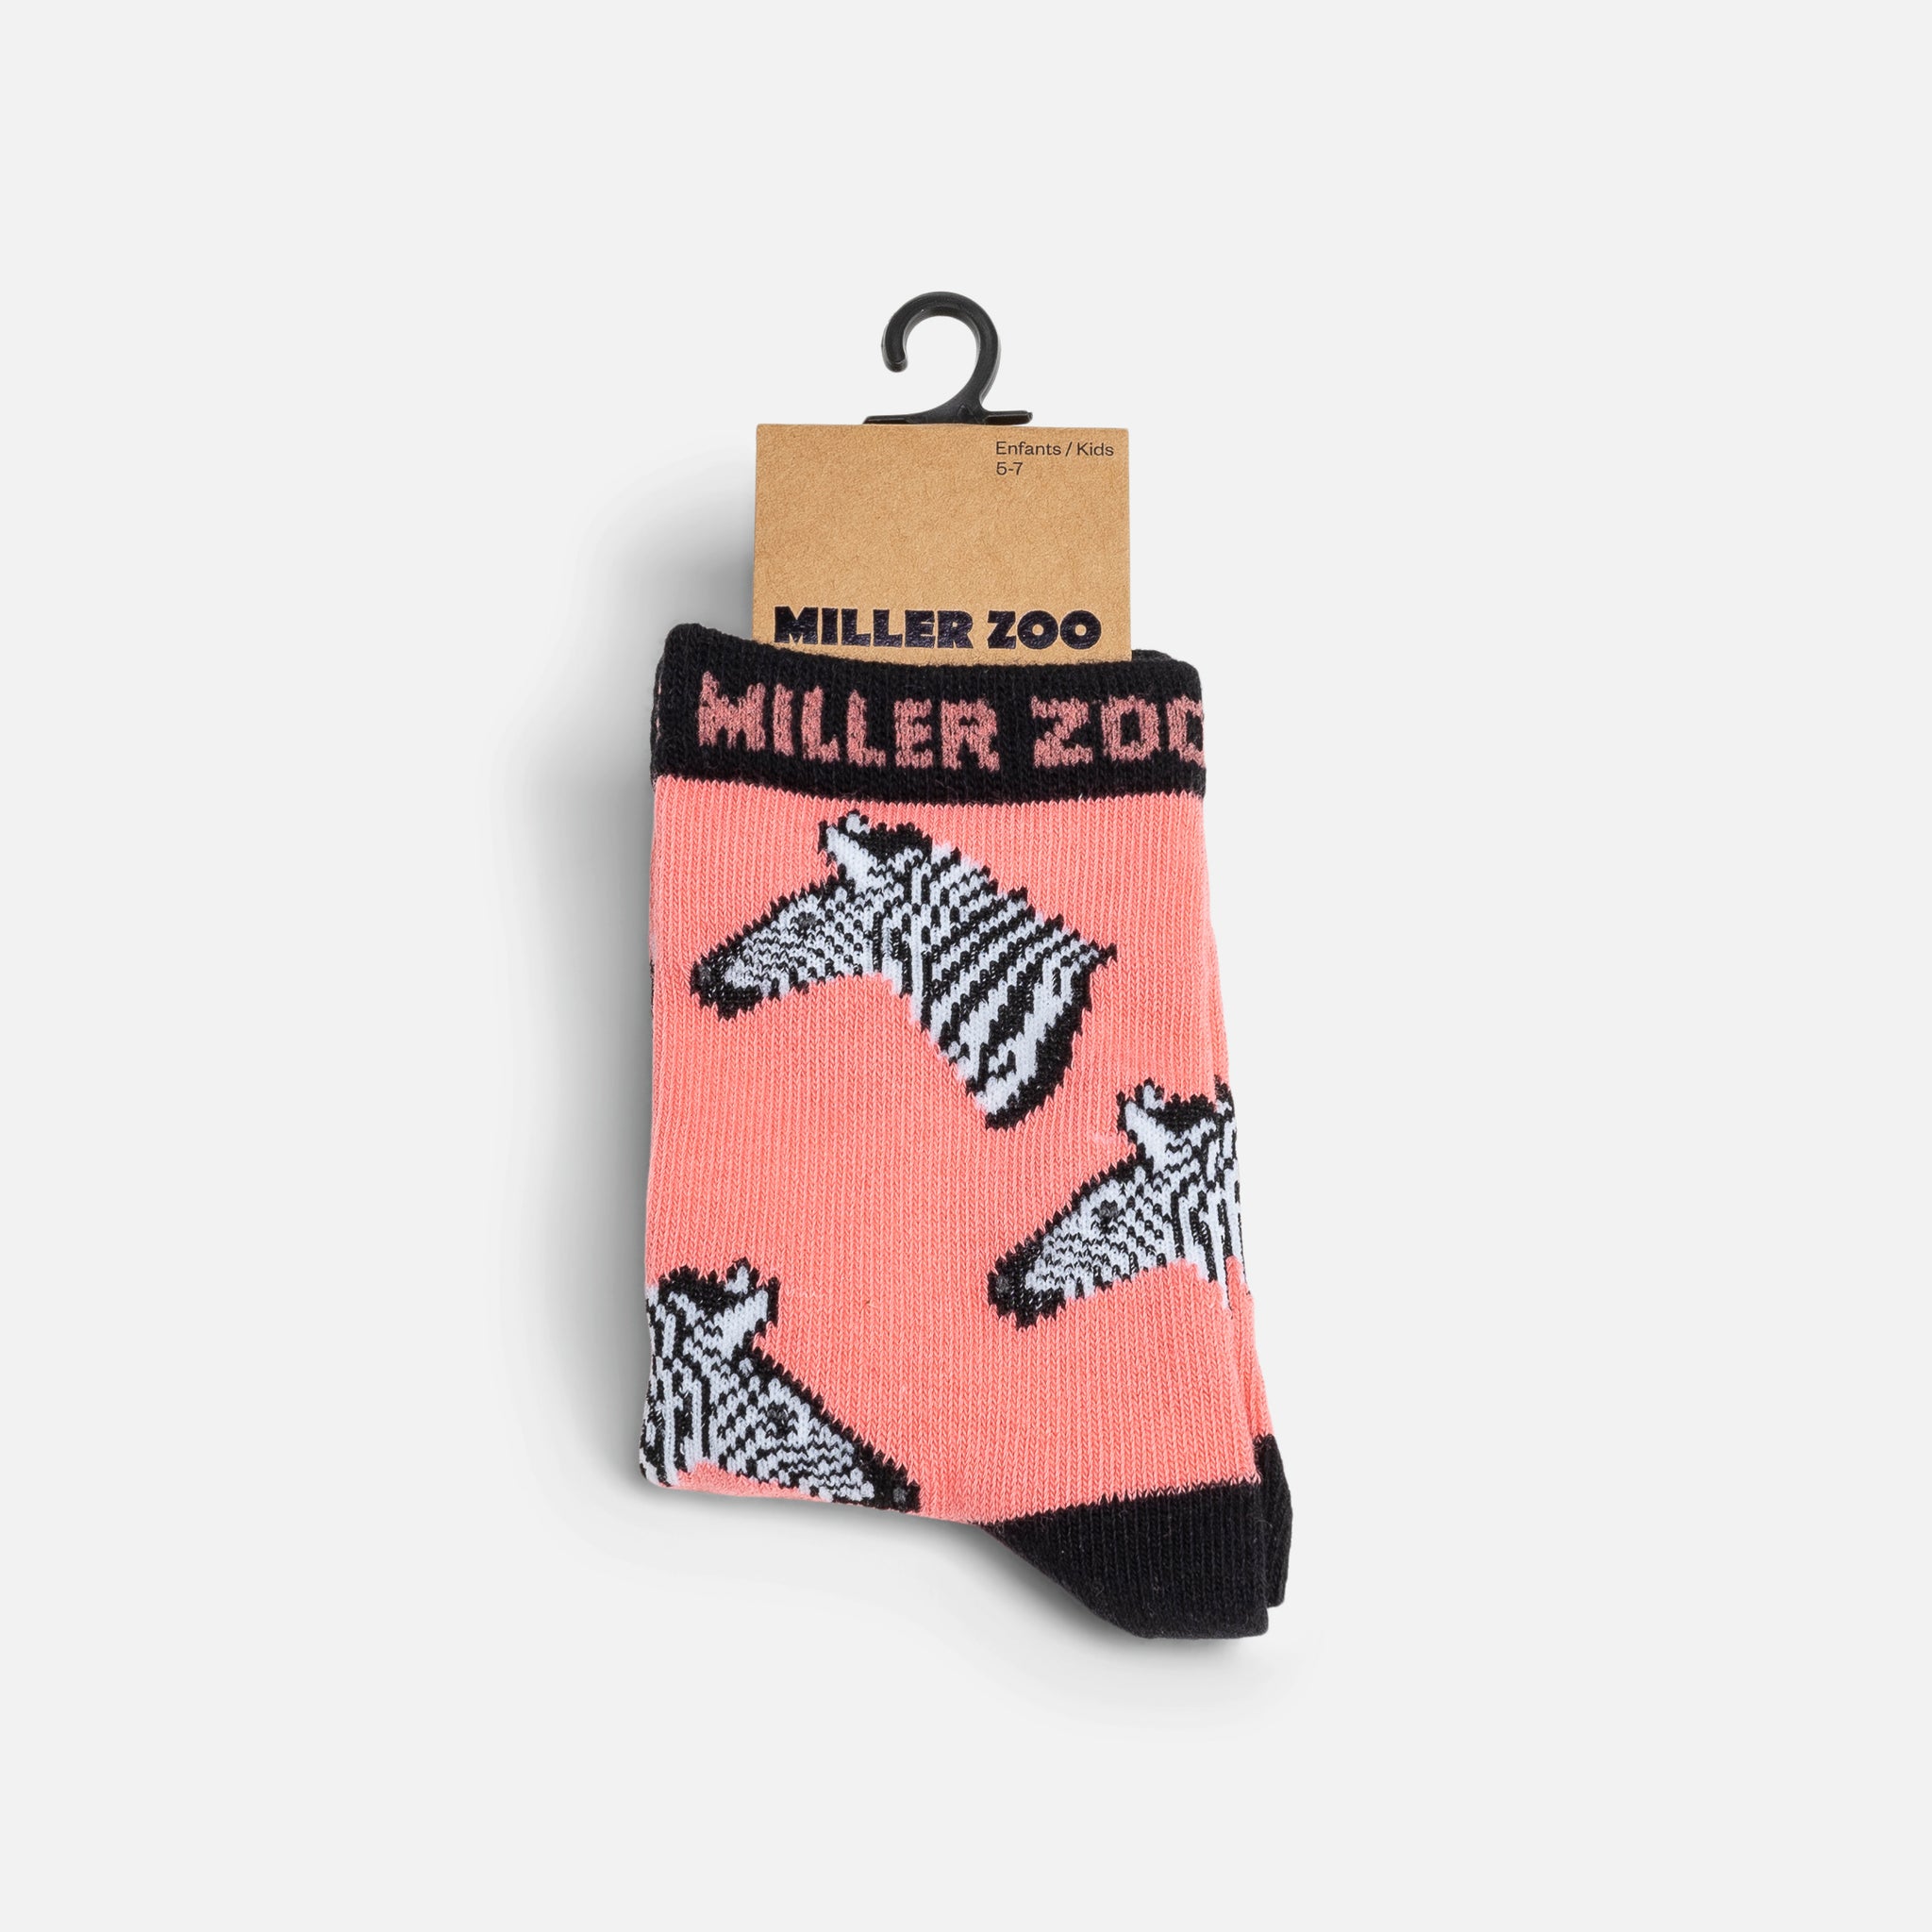 Chaussette Fille - La Boutique du Miller Zoo